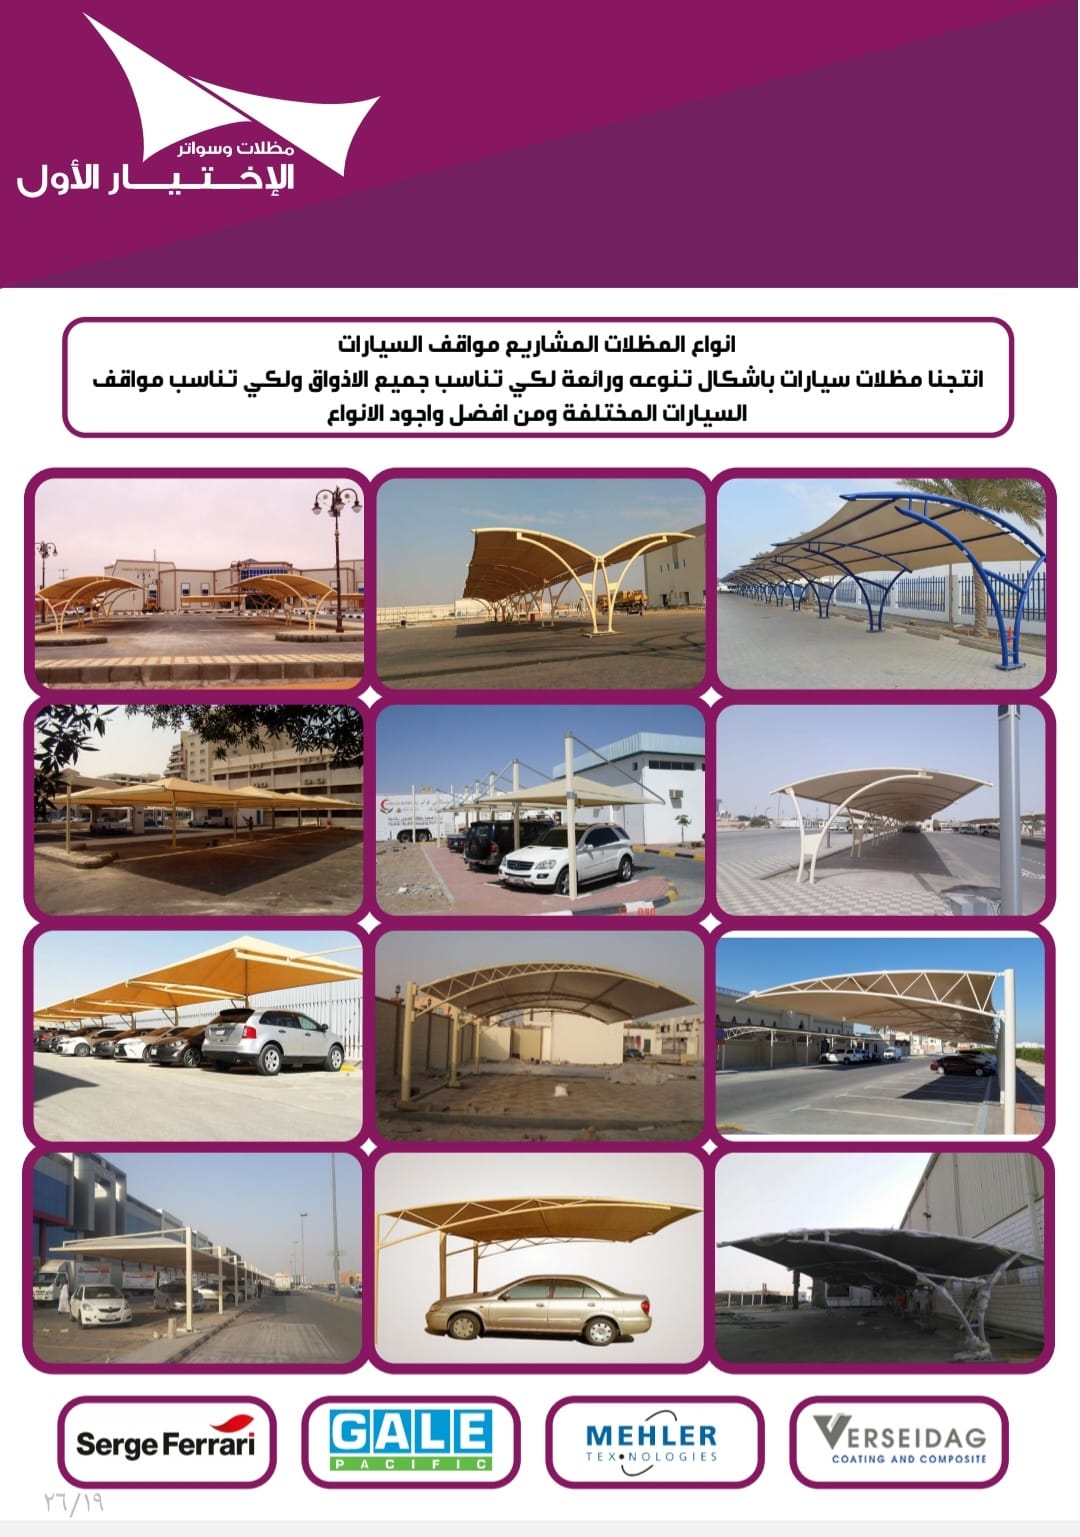 مظلات سيارات الرياض 0500559613. هل تبحث عن مظلات سيارات الرياض مناسبة لجراج بيتك ,وشركتك او الفيلا